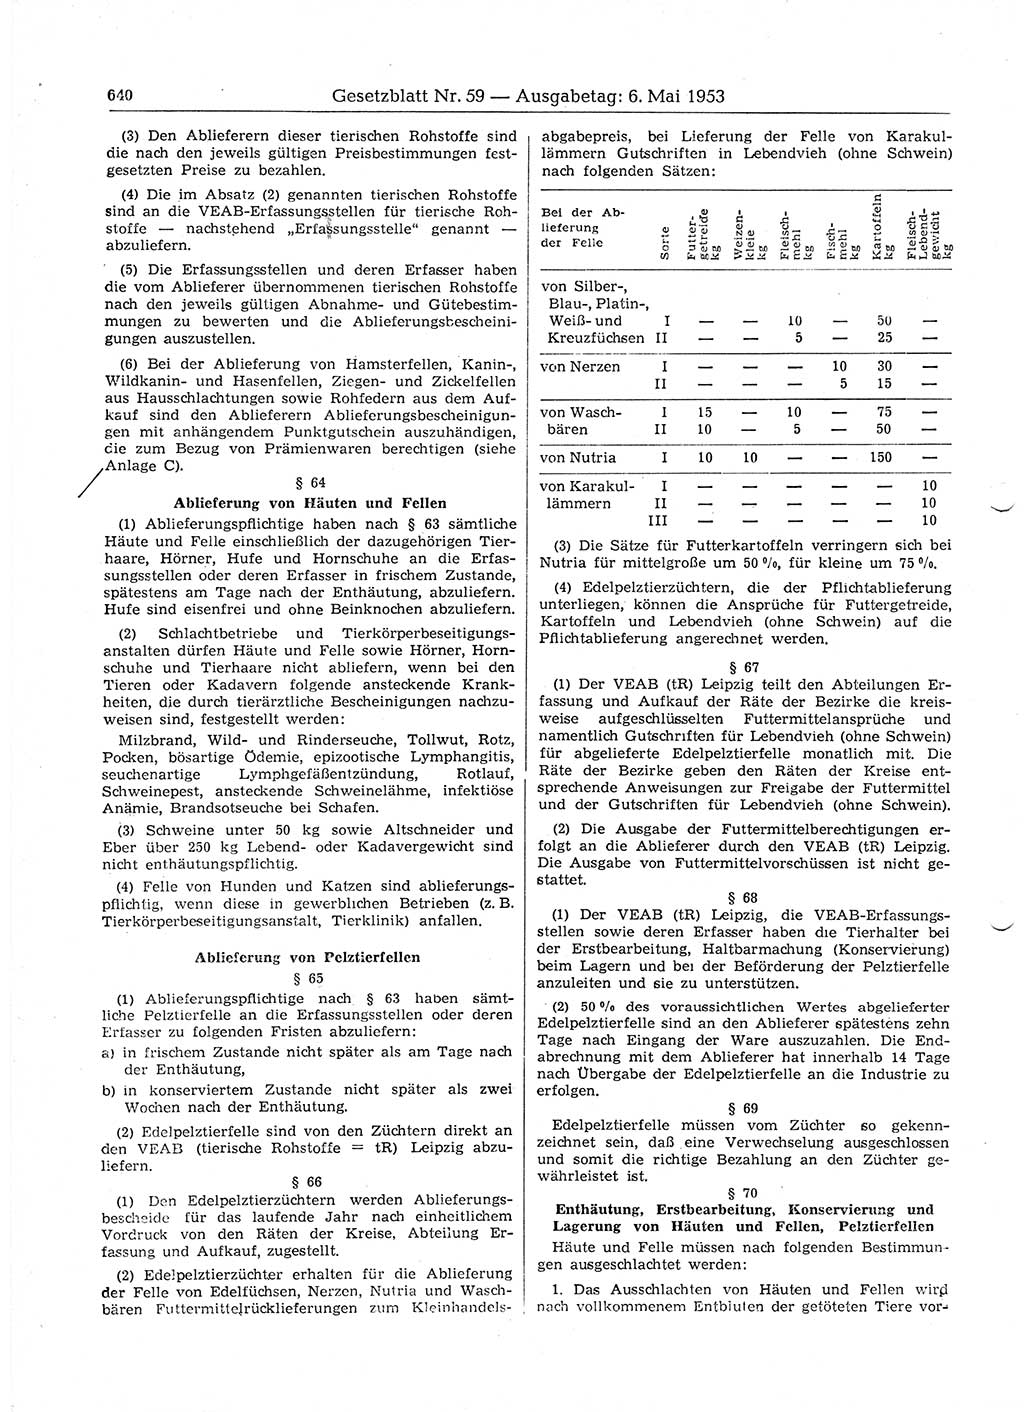 Gesetzblatt (GBl.) der Deutschen Demokratischen Republik (DDR) 1953, Seite 640 (GBl. DDR 1953, S. 640)